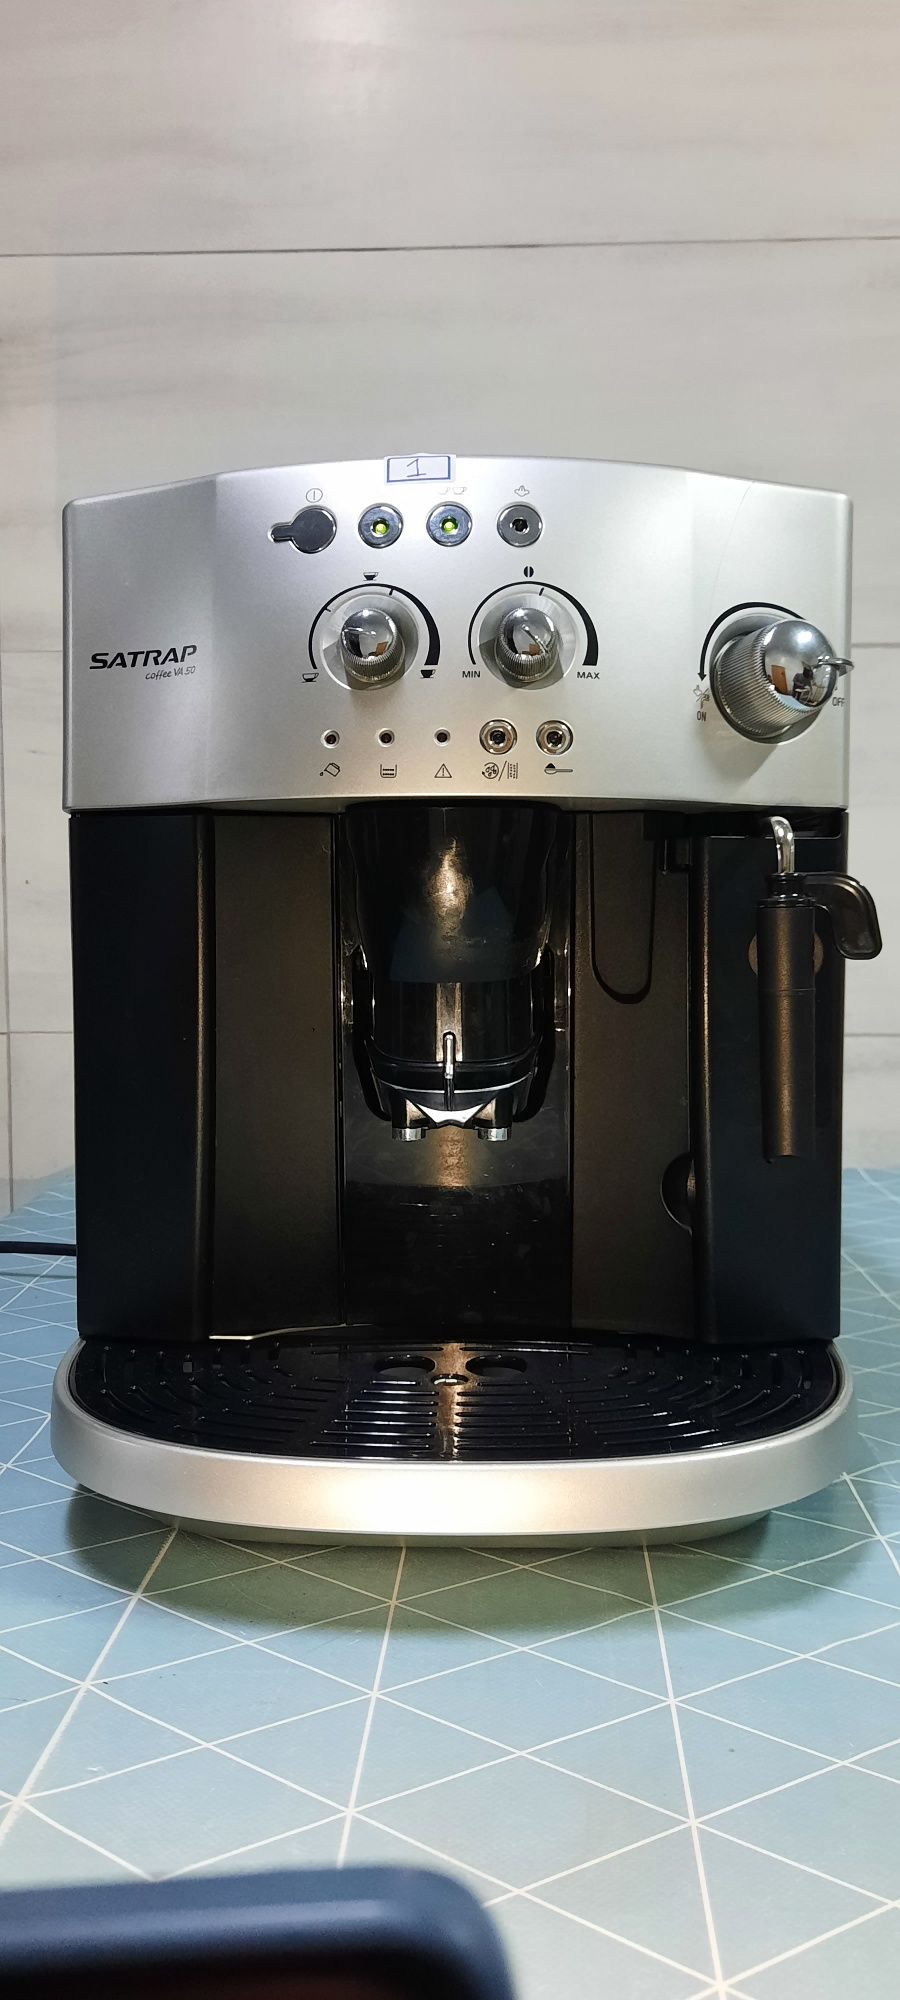 Máquina de café delonghi/satrap va 50